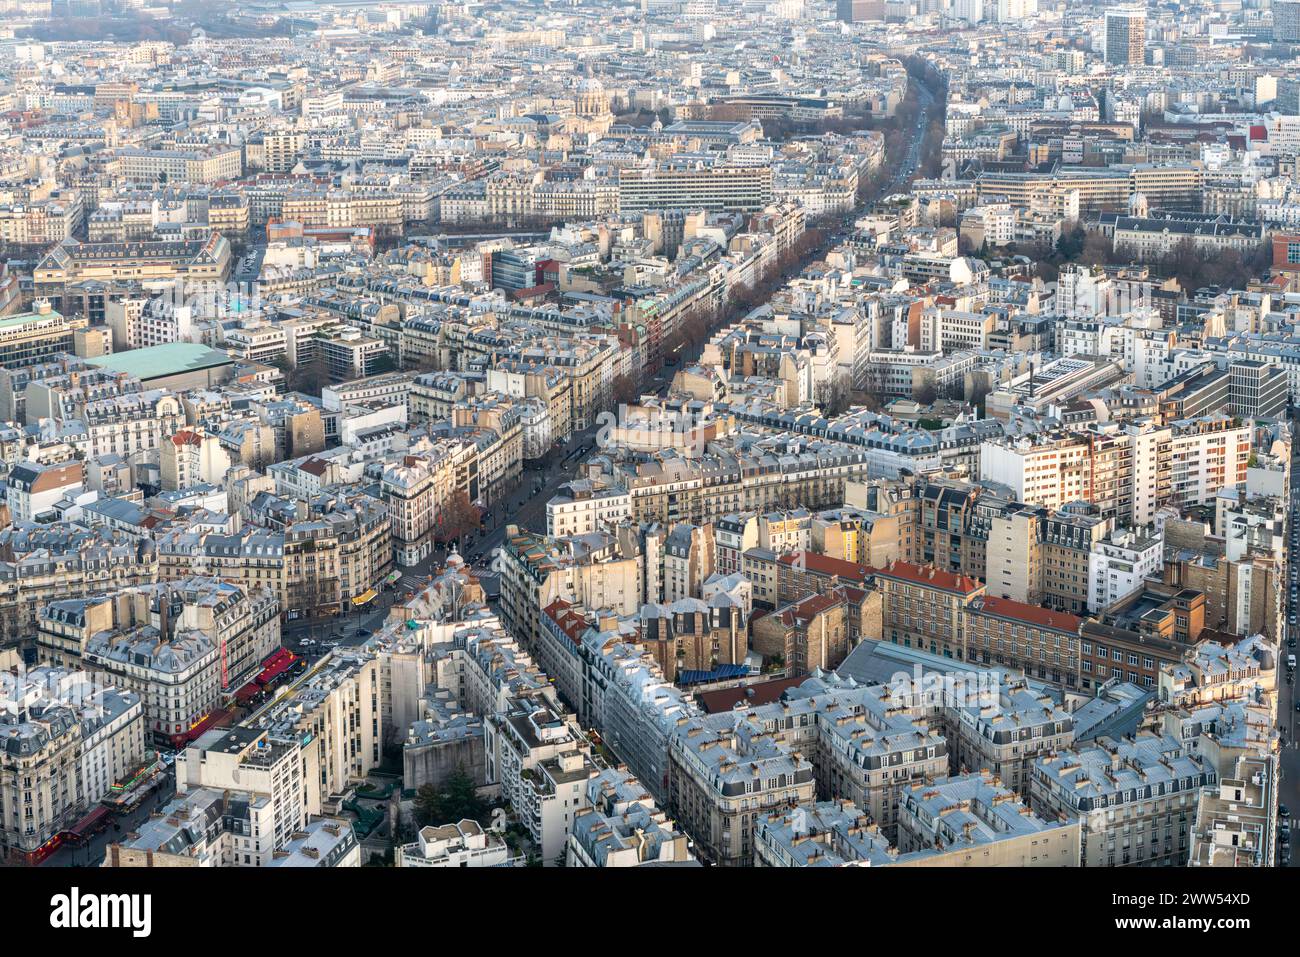 Surplombant le boulevard Montparnasse animé qui serpente à travers le paysage urbain de Paris. Banque D'Images